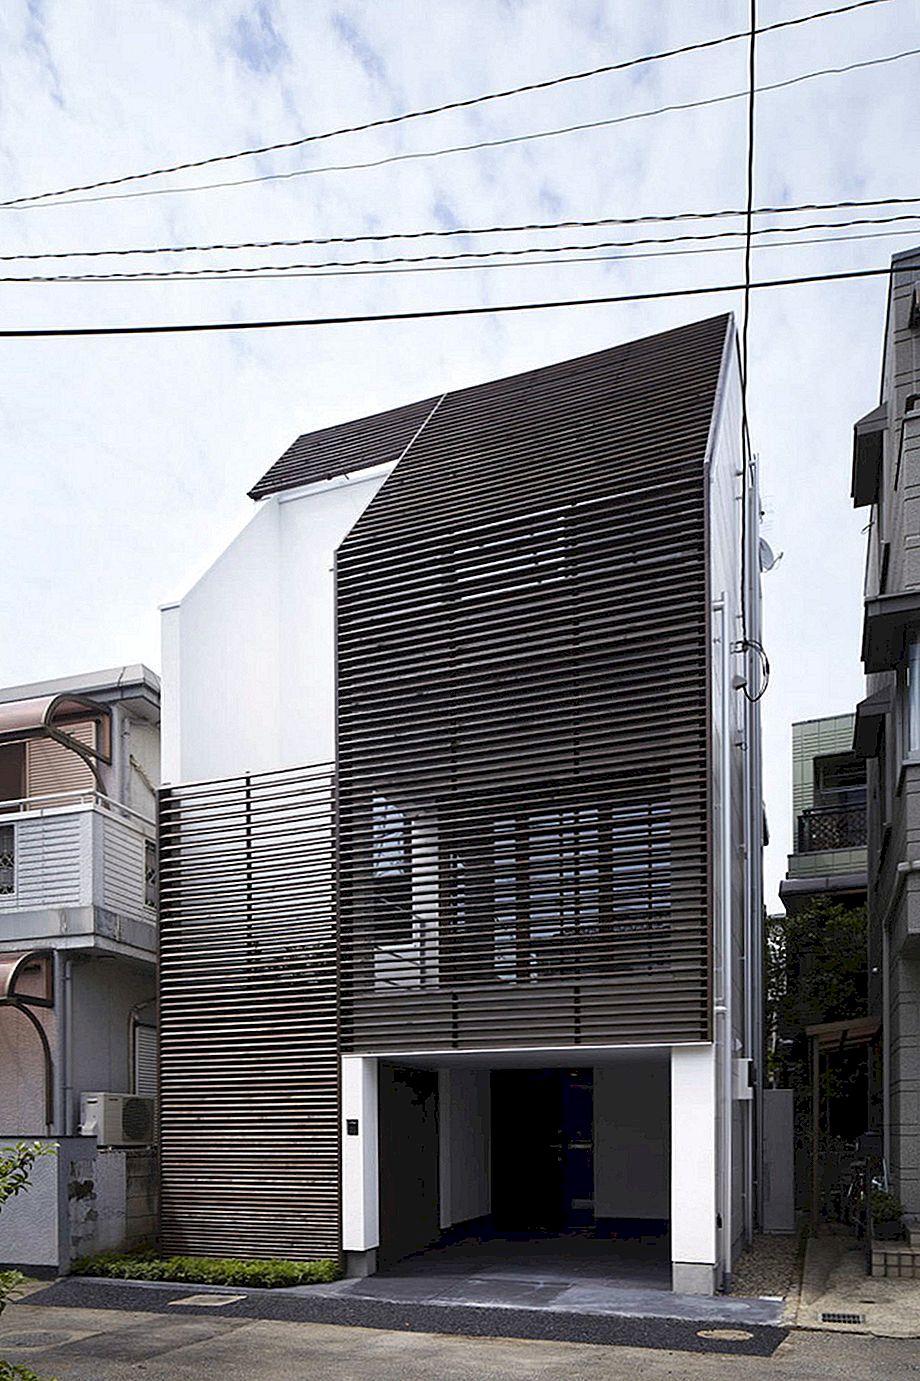 การเพิ่มขนาดพื้นที่ผ่านผังงานเดิม: IS House ในญี่ปุ่น